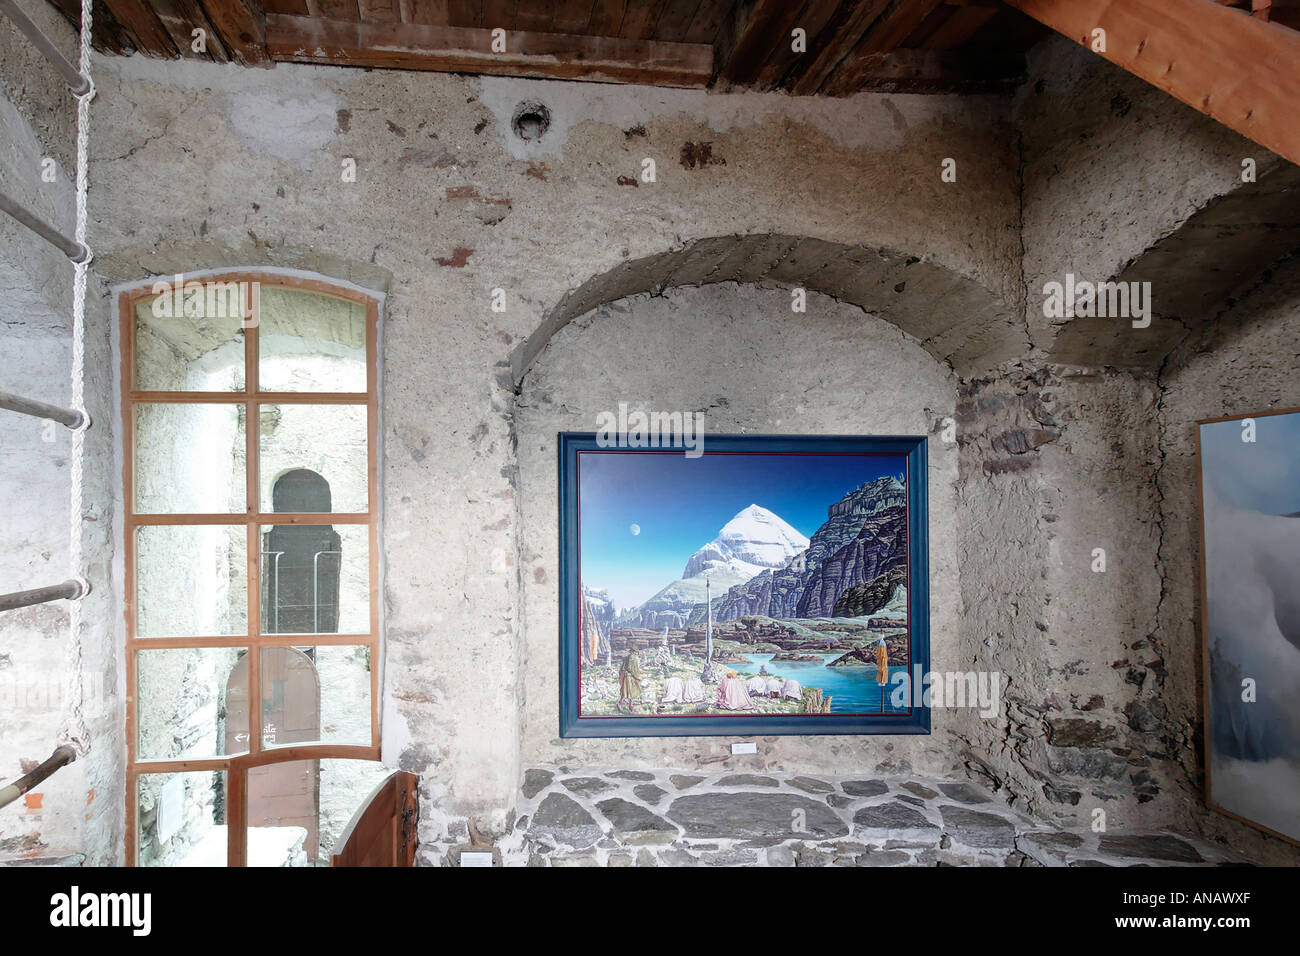 Galerie photos dans la tour, Messner Mountain Museum sur le château Juval au-dessus du Tyrol du Sud, Schnalstal, Italie Banque D'Images